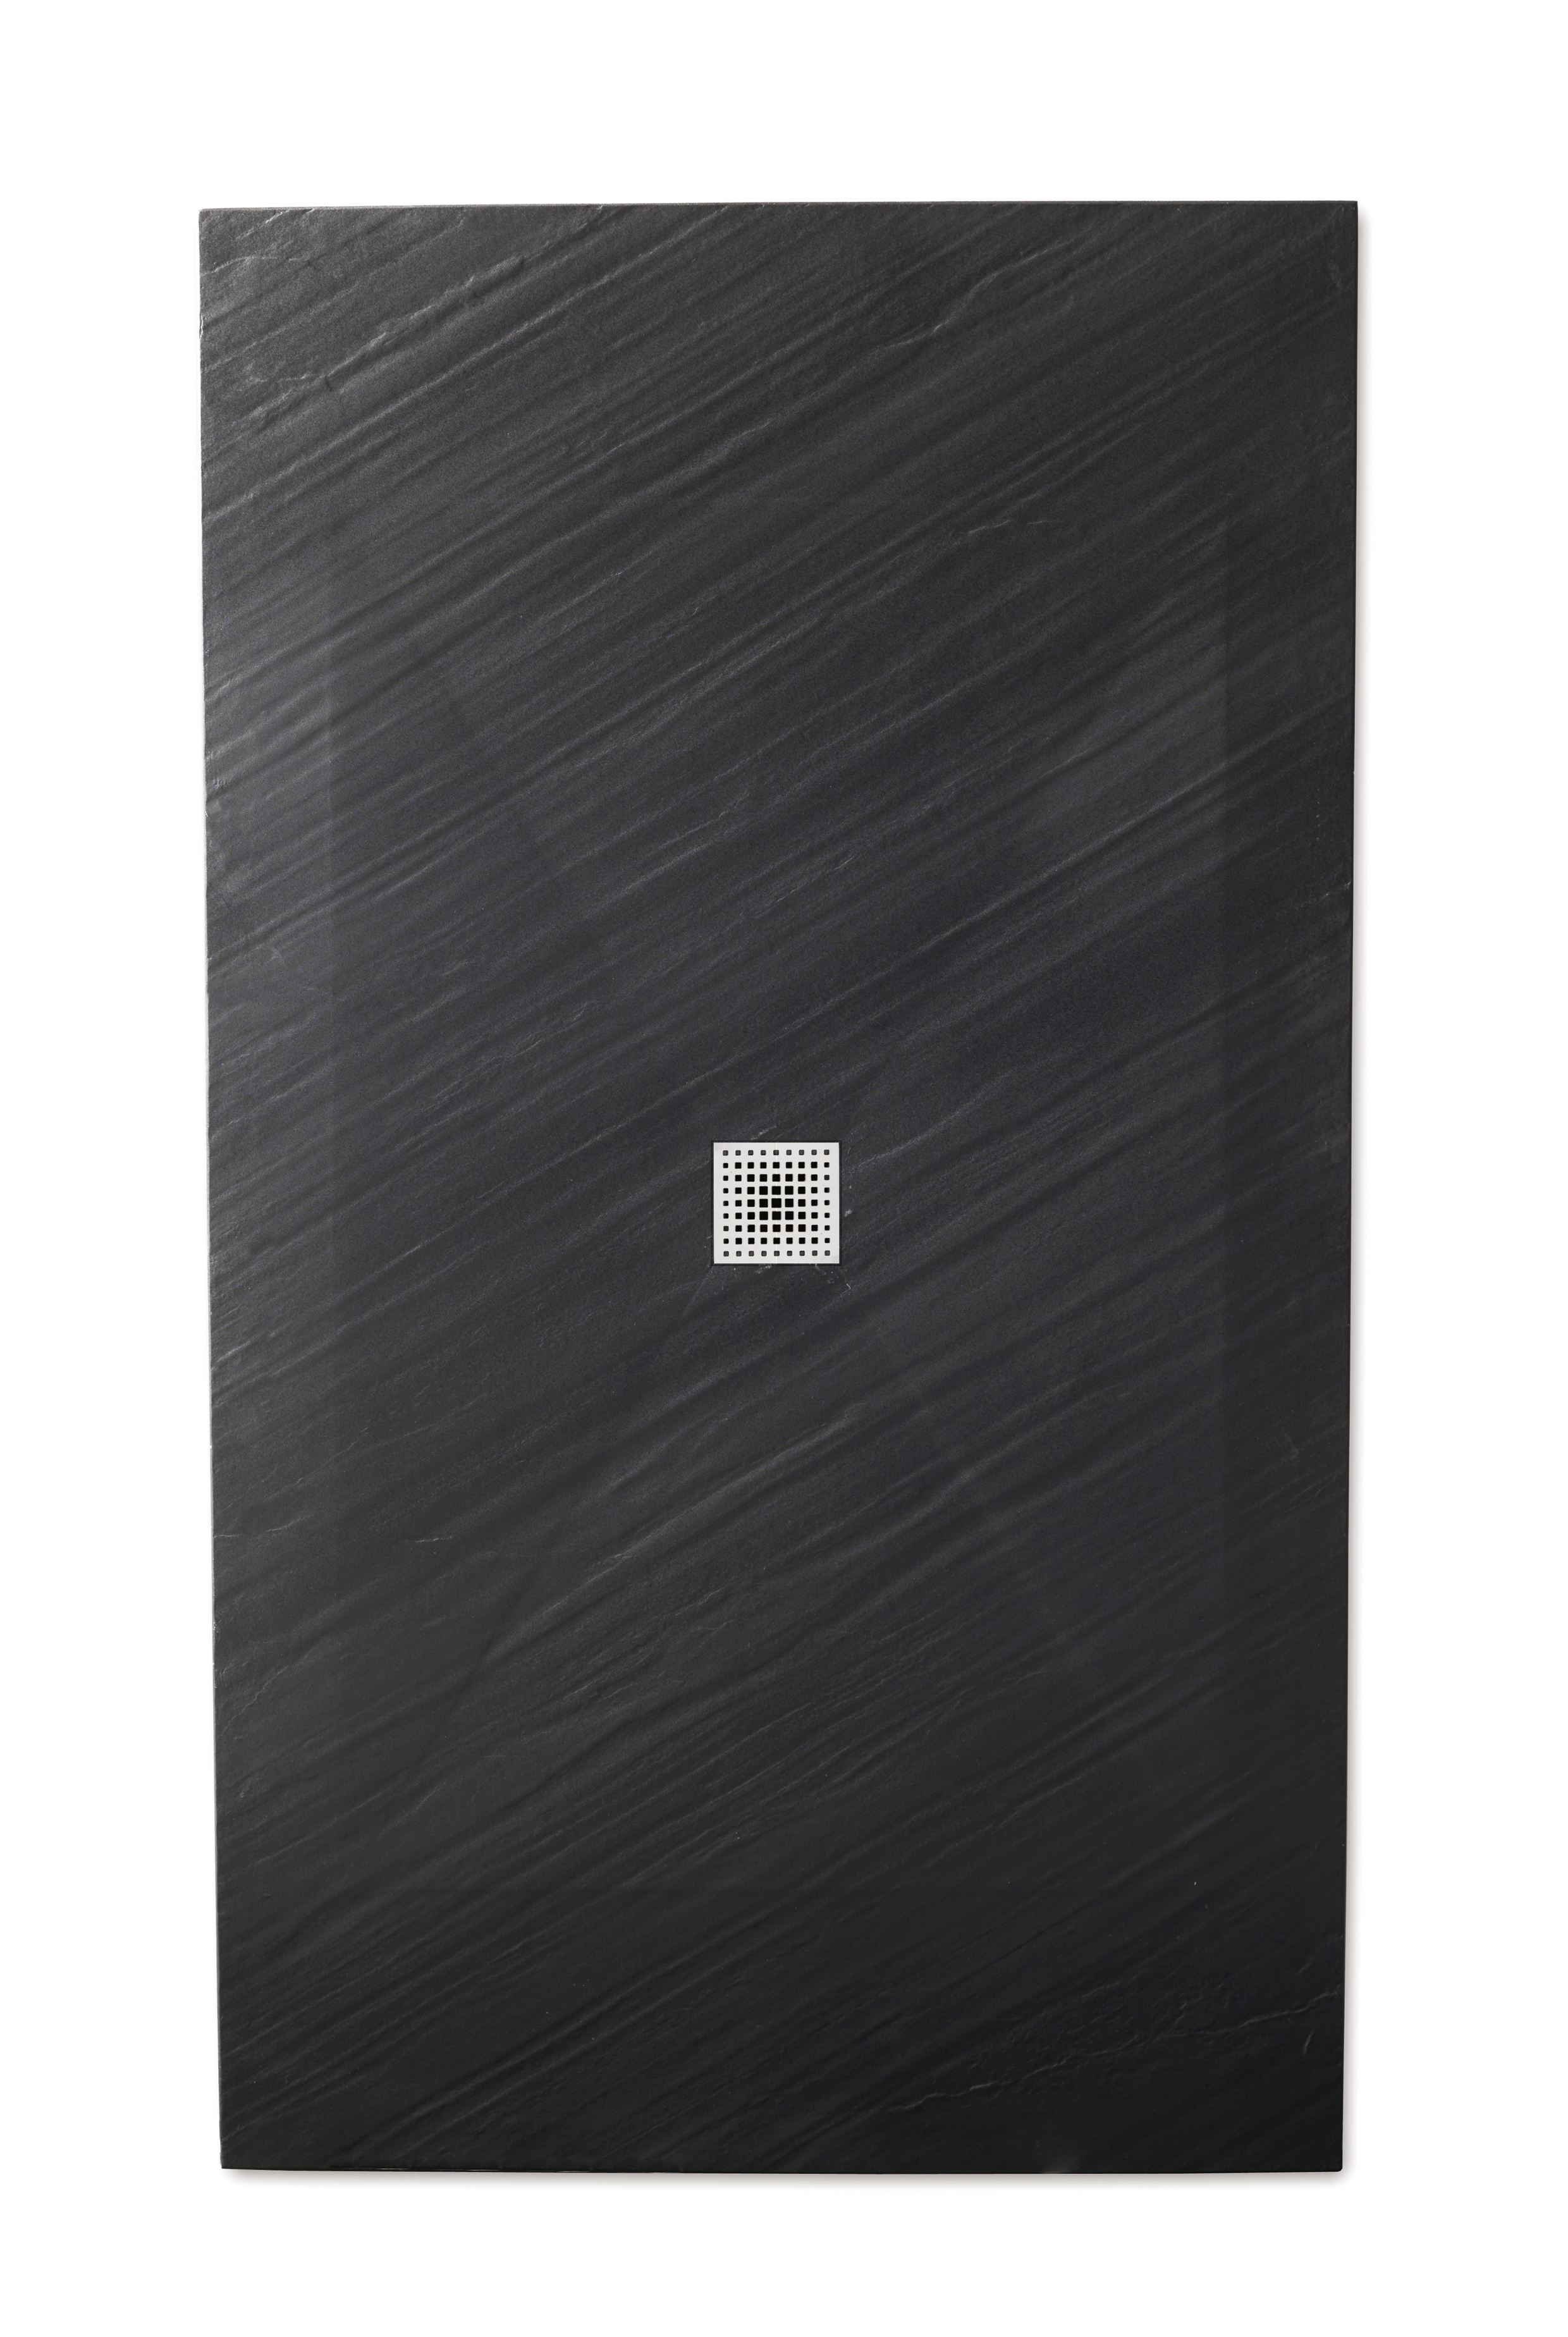 PIANA piatto doccia ultra flat 3 cm in Mineralstone 80x200 finitura nero - Bagno Italiano